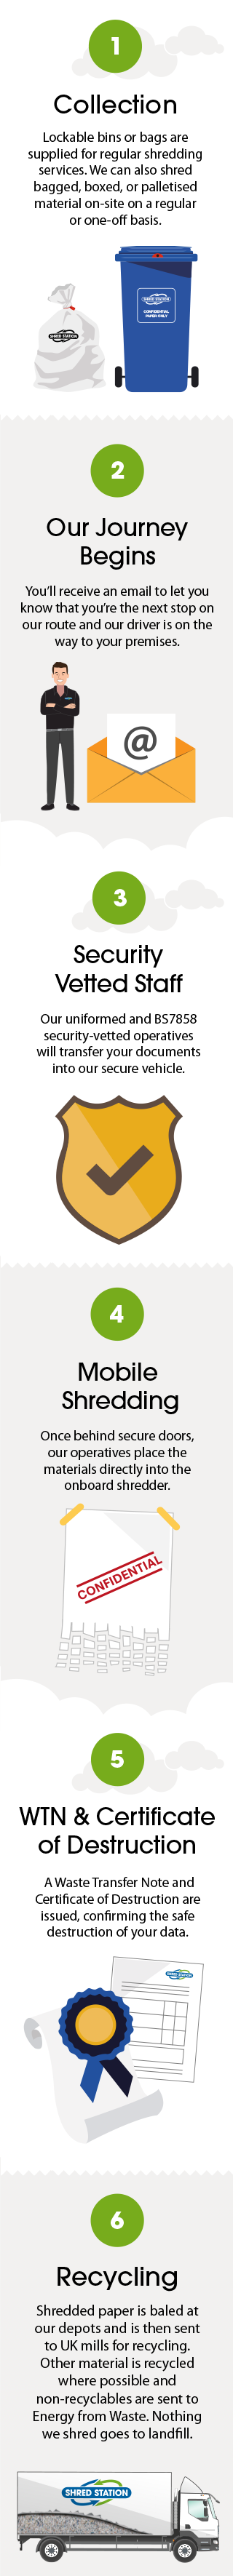 Mobile Shredding Infographic